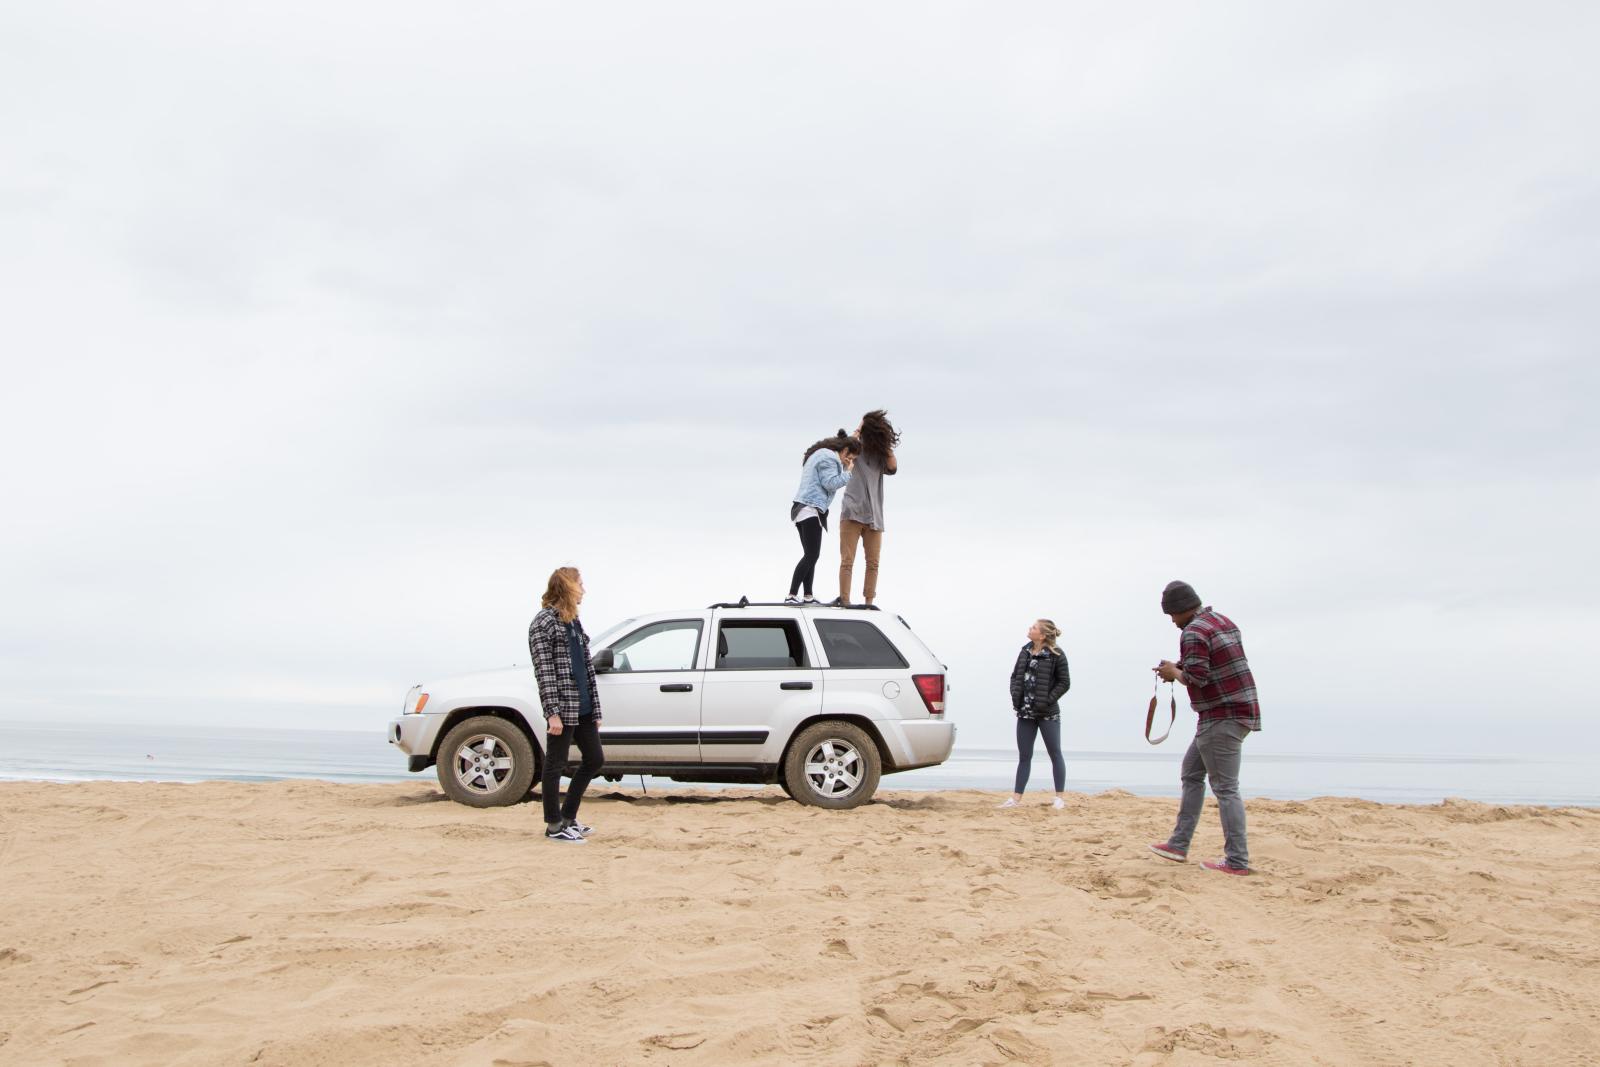 groupe de jeune sur une plage avec une voiture